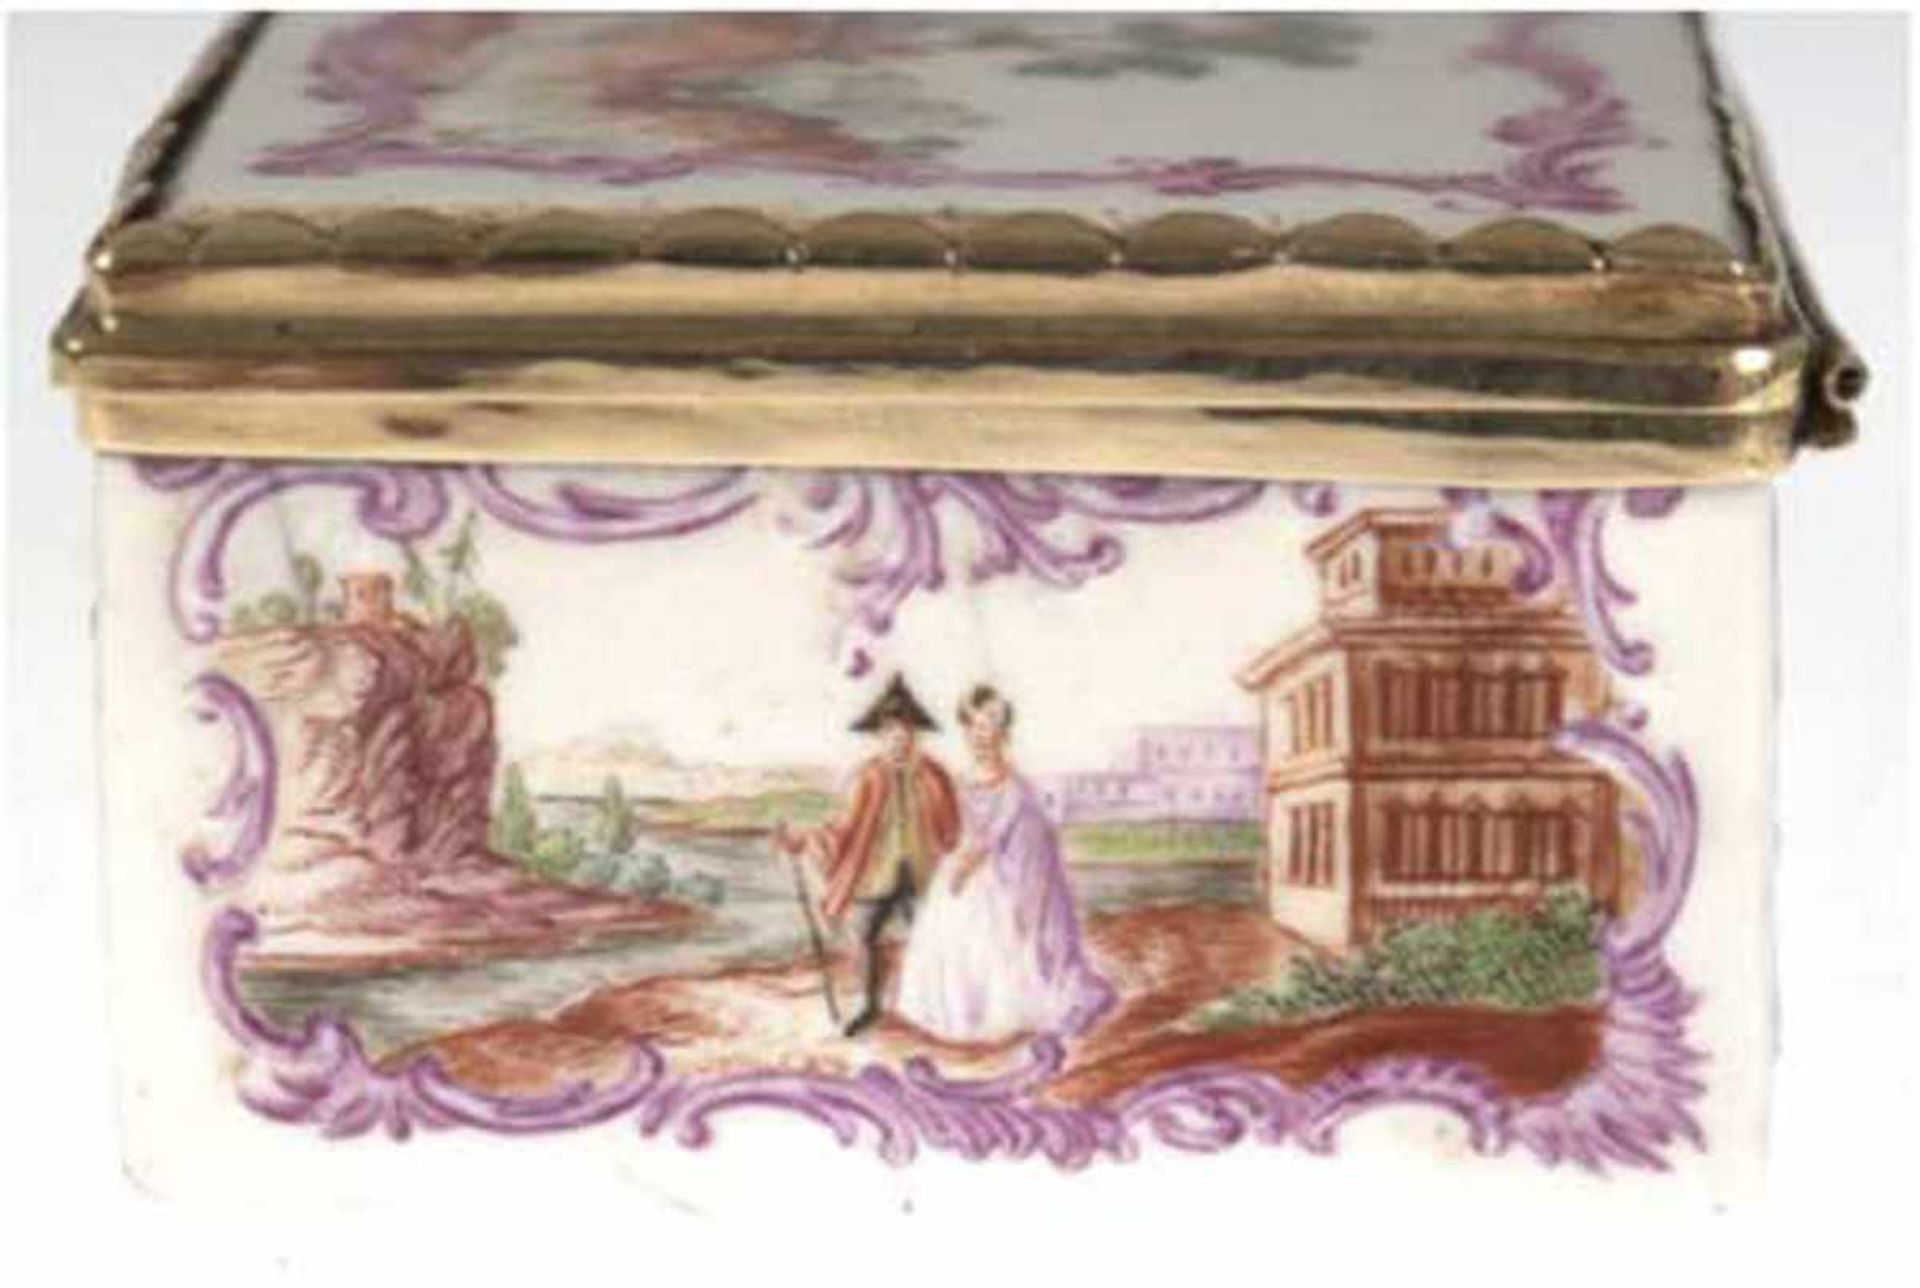 Deckeldose, 18. Jh., Porzellan, polychrome Malerei, umlaufende Landschaftsdarstellung mit - Image 5 of 5